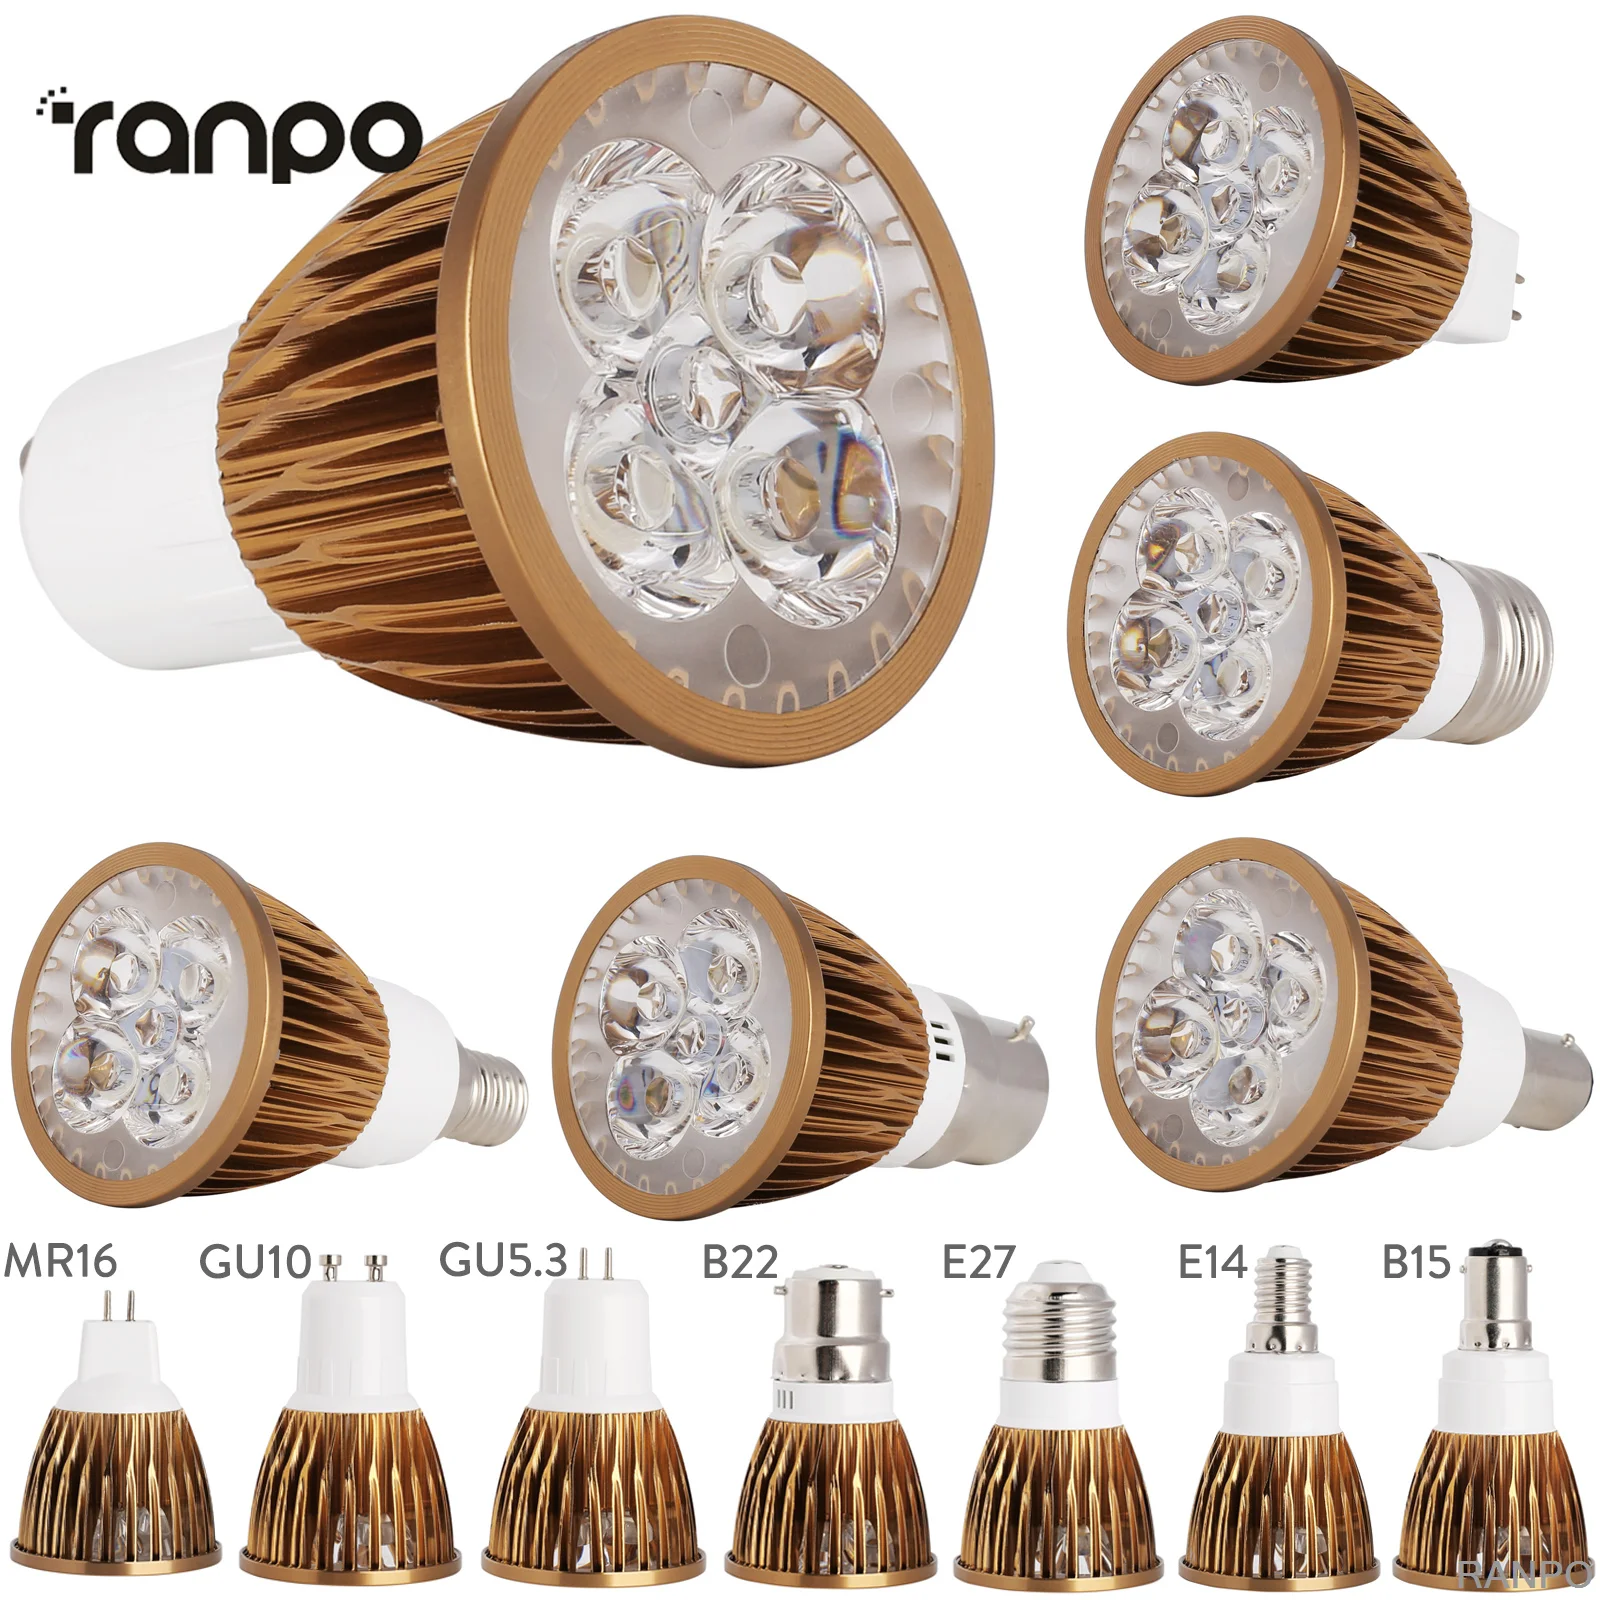 Dimmable LED Spotlight Bulbs GU10 MR16 E27 E14 GU5.3 B22 B15 110V 220V 12V Lamp 